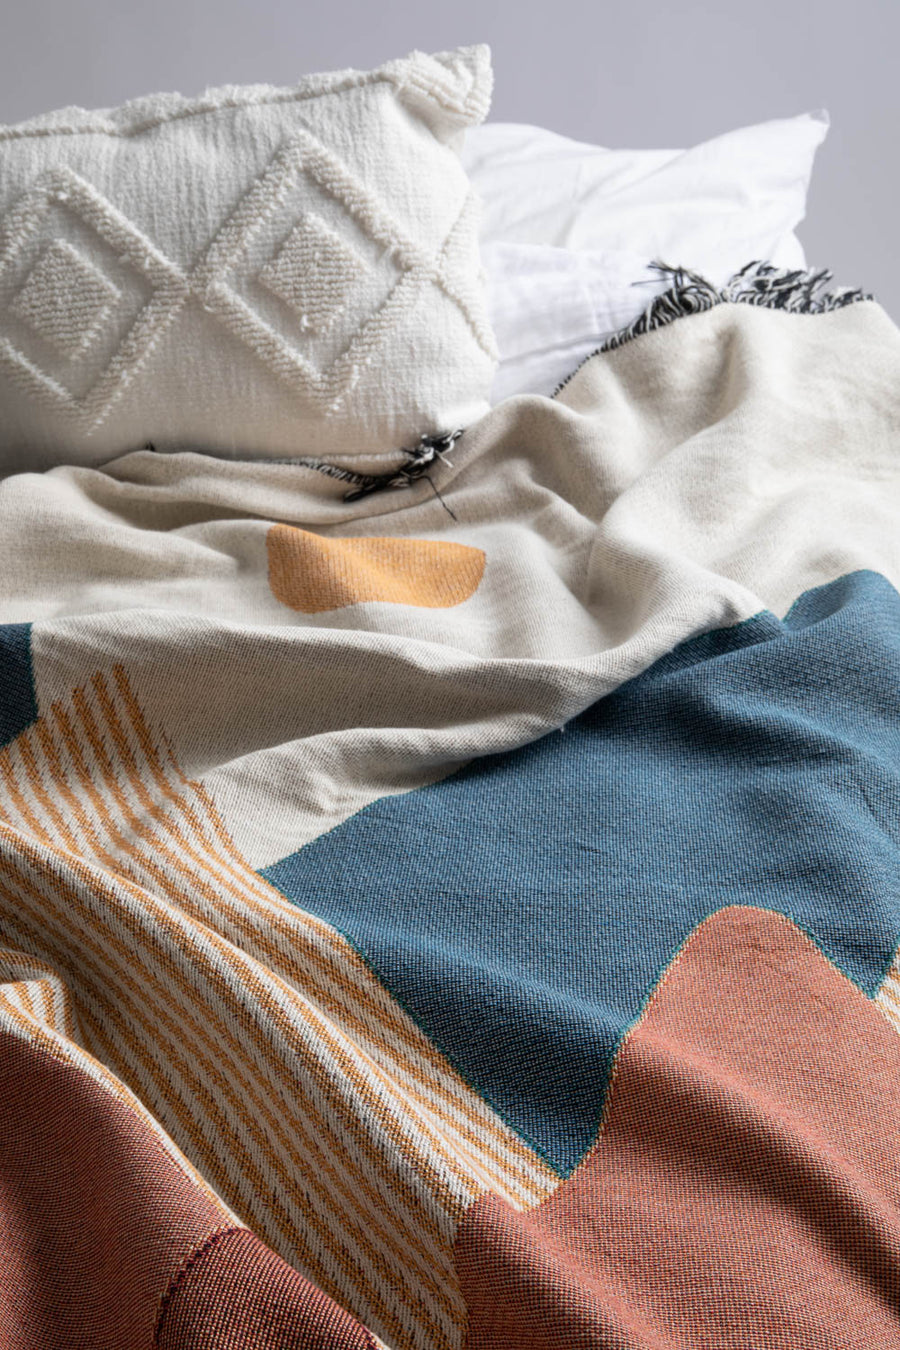 Boho Mountain Throw Blanket On Bed